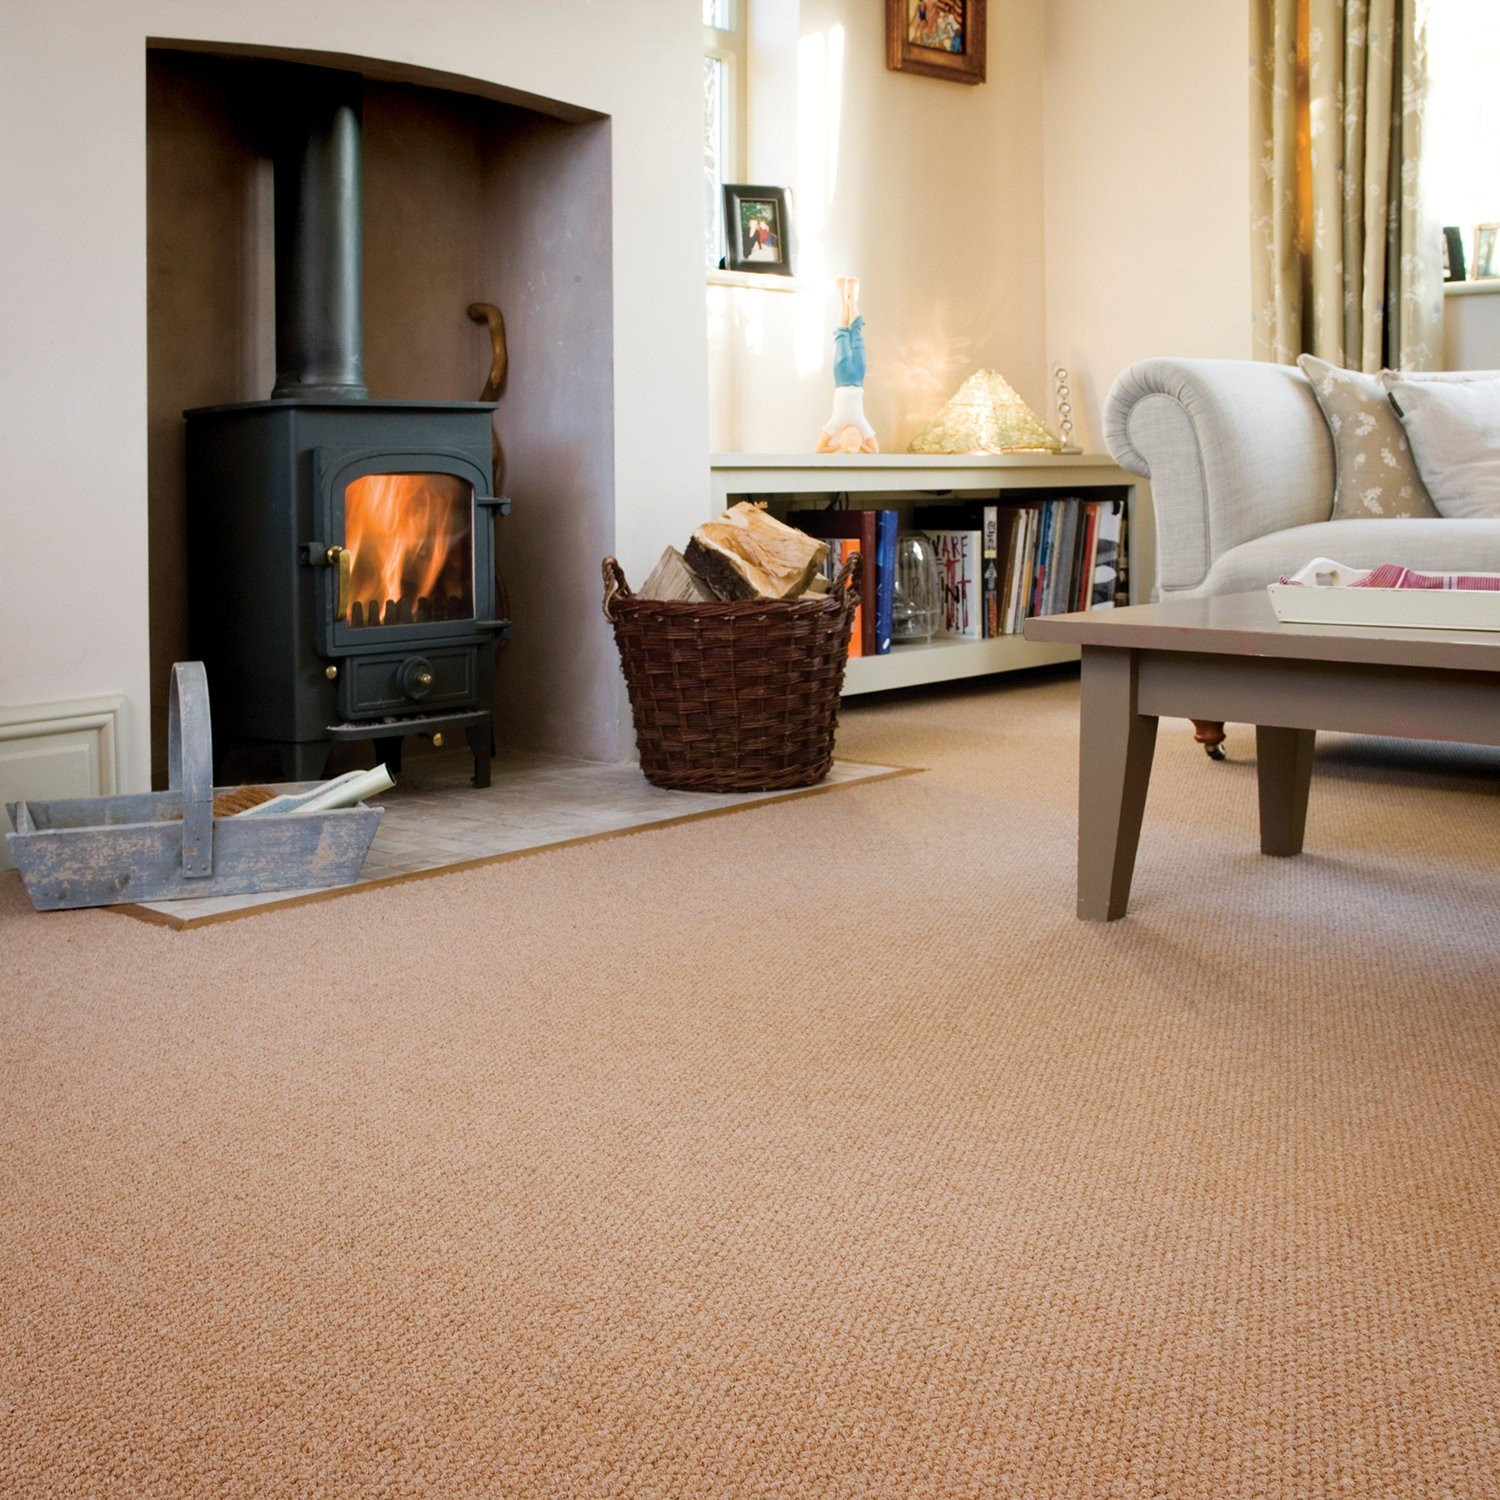 Living Room Carpet Ideas
 10 benefits of having carpet for living room